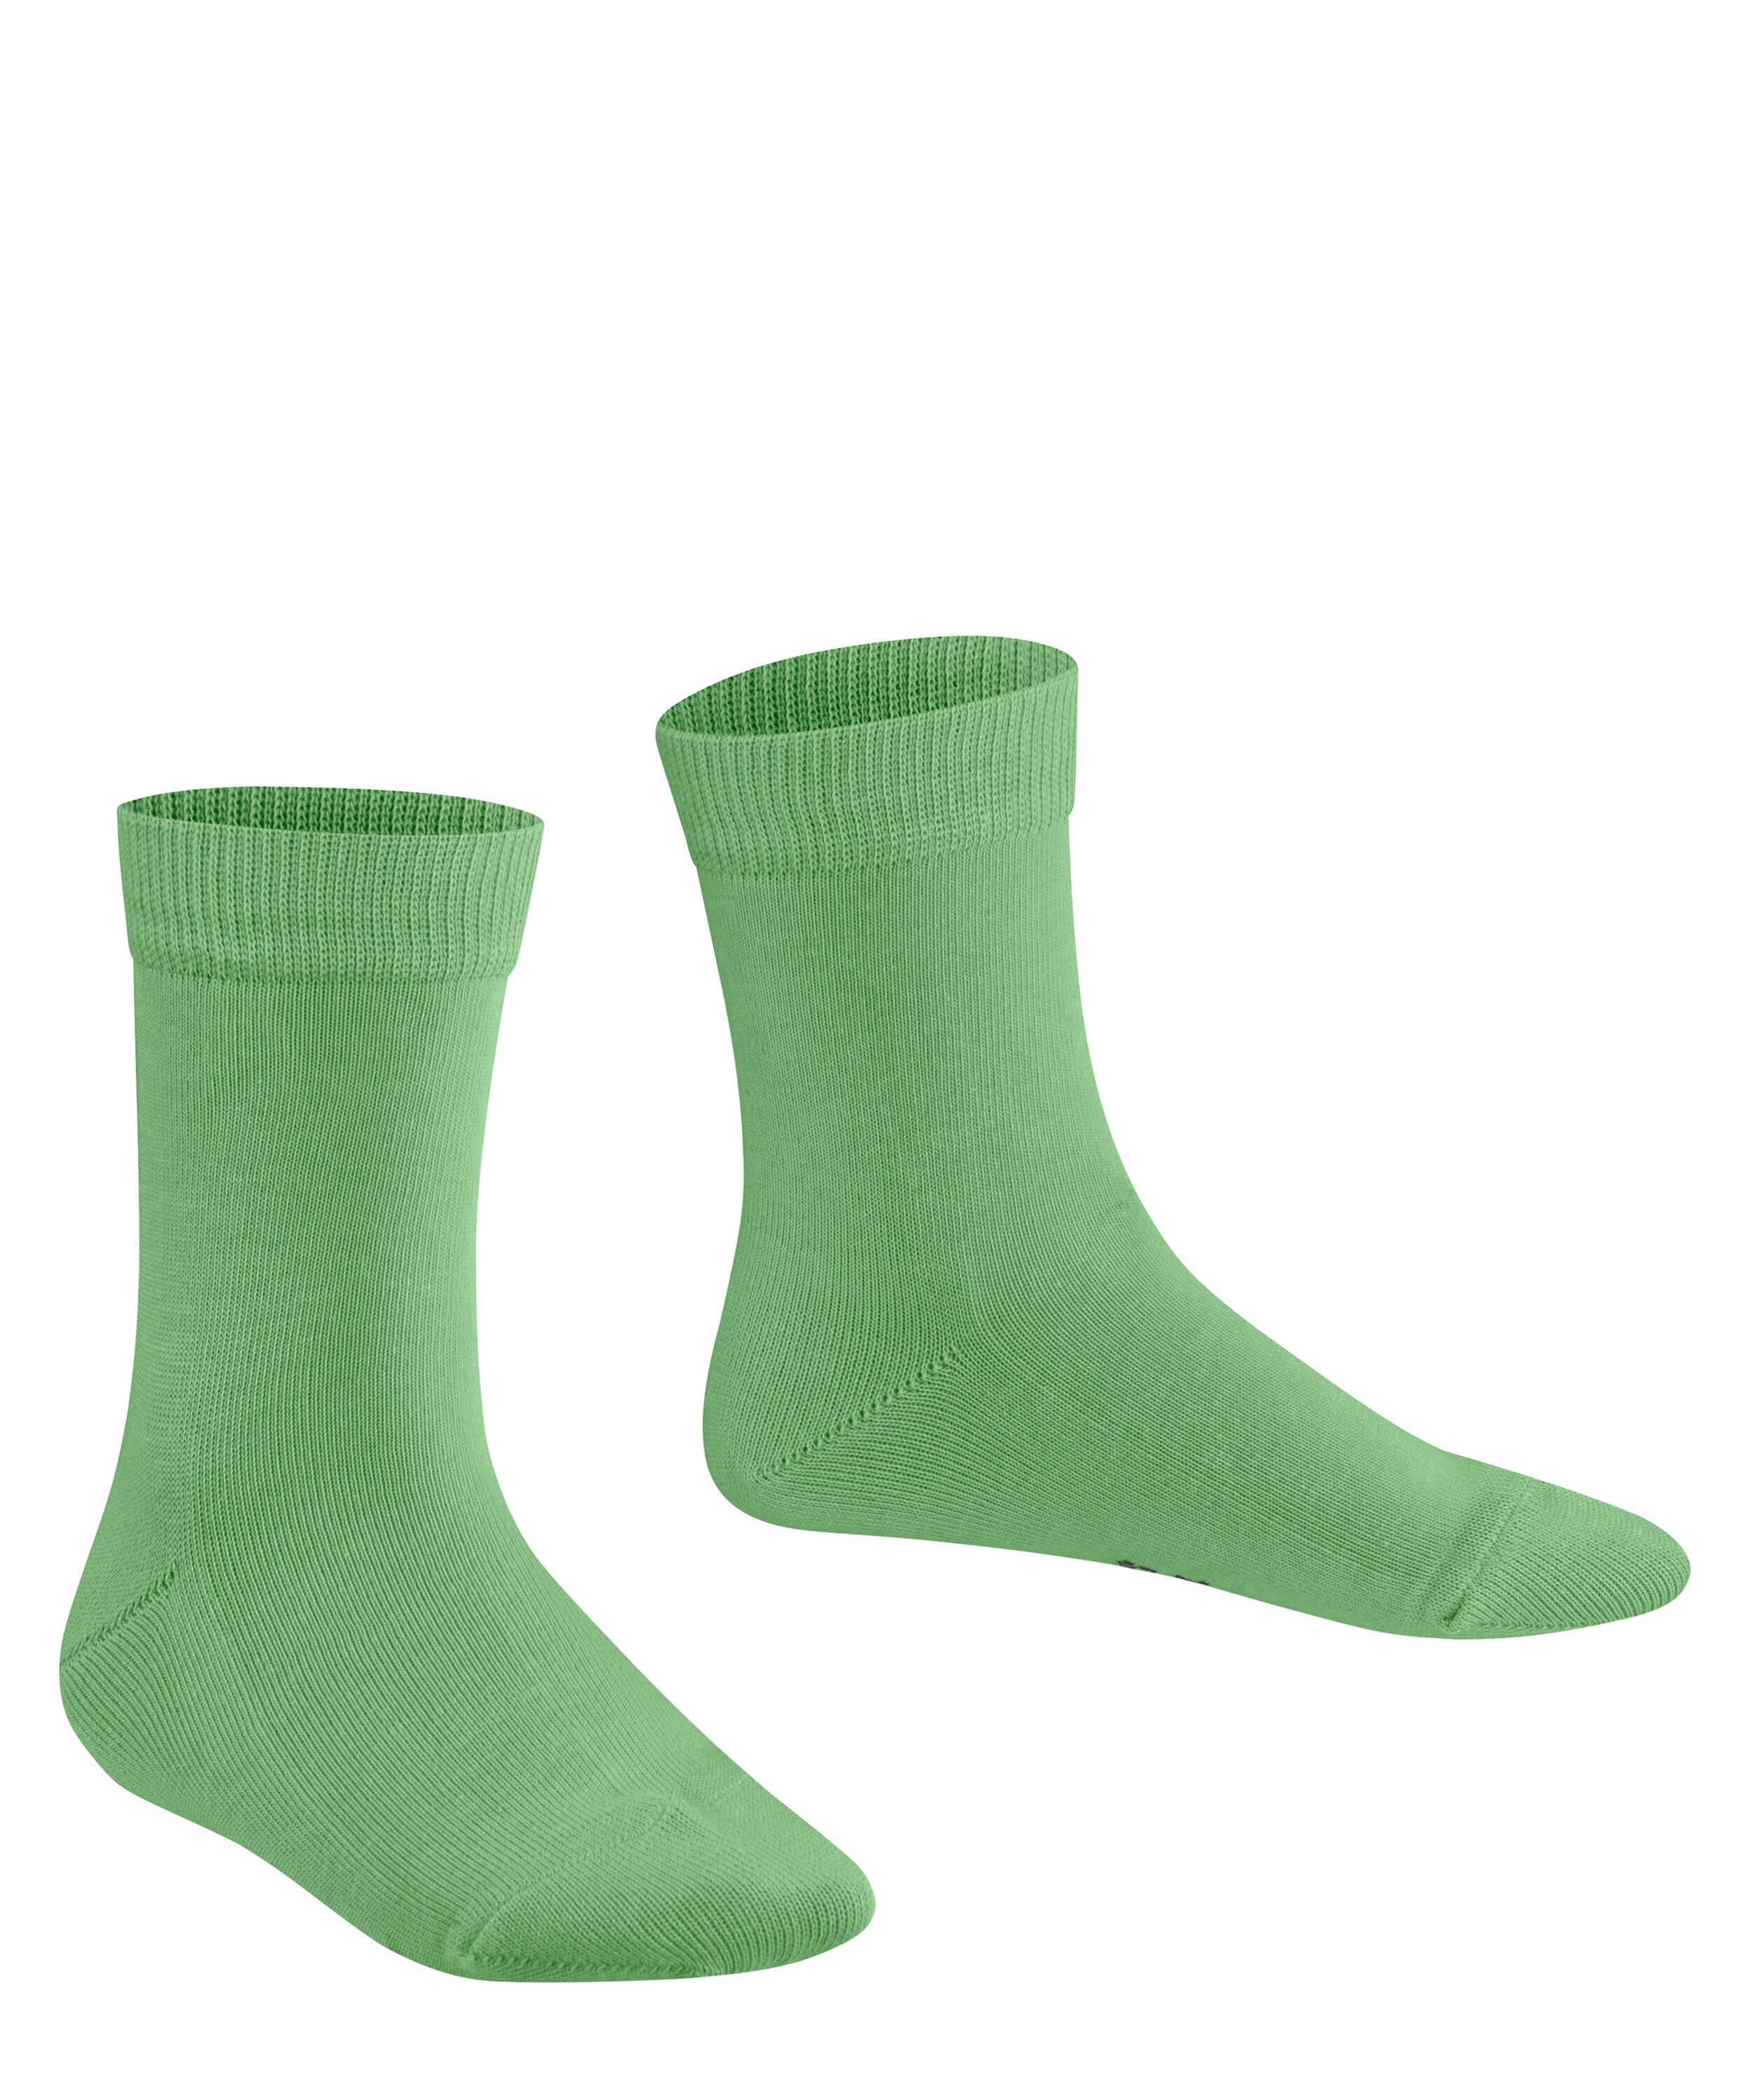 lizzardgreen Socken FALKE (7486) Family (1-Paar)